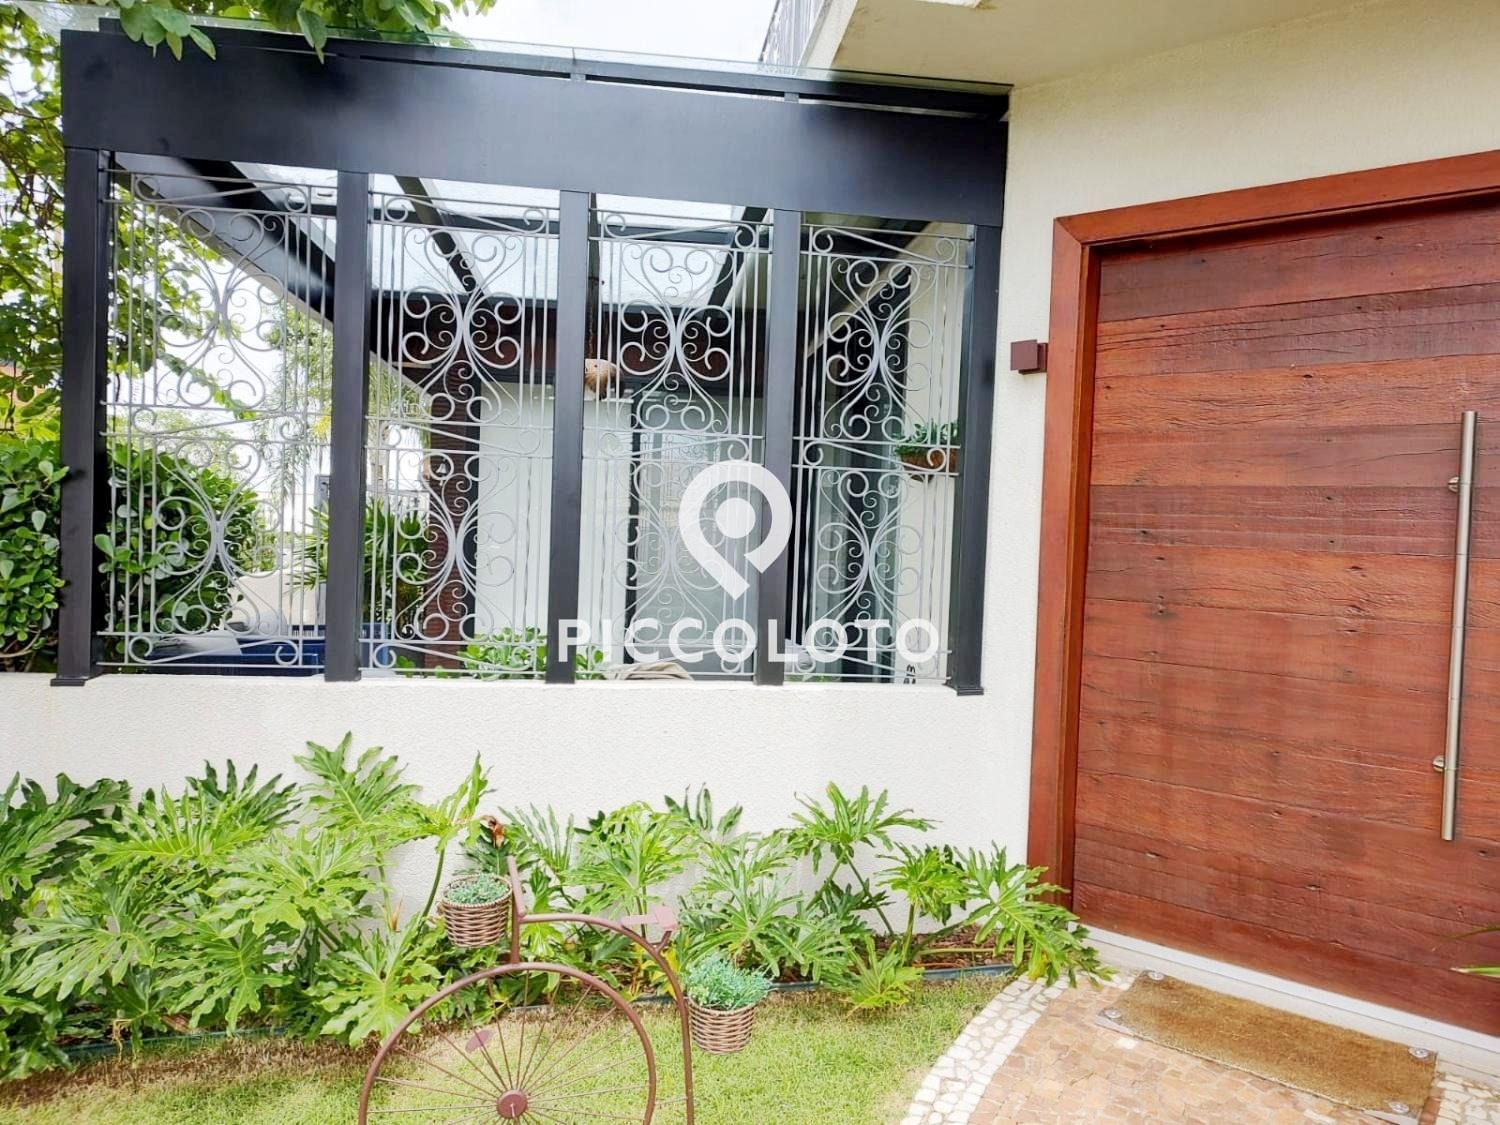 Piccoloto -Casa à venda no Parque Brasil 500 em Paulínia